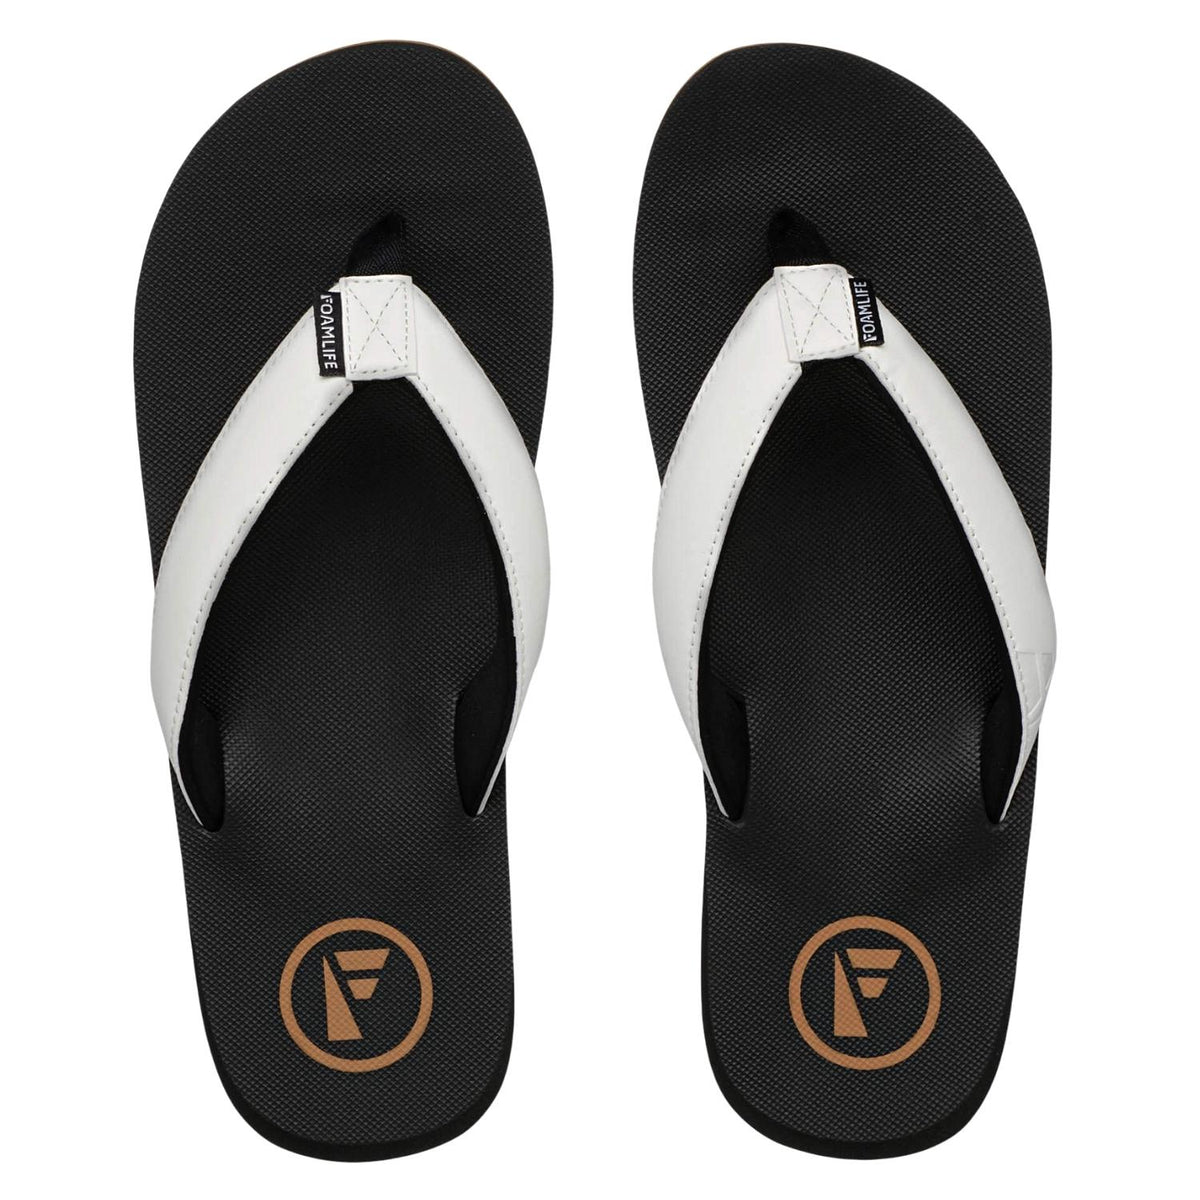 Foamlife Traa-Sc Flip Flop - Black - Mens Flip Flops by FoamLife